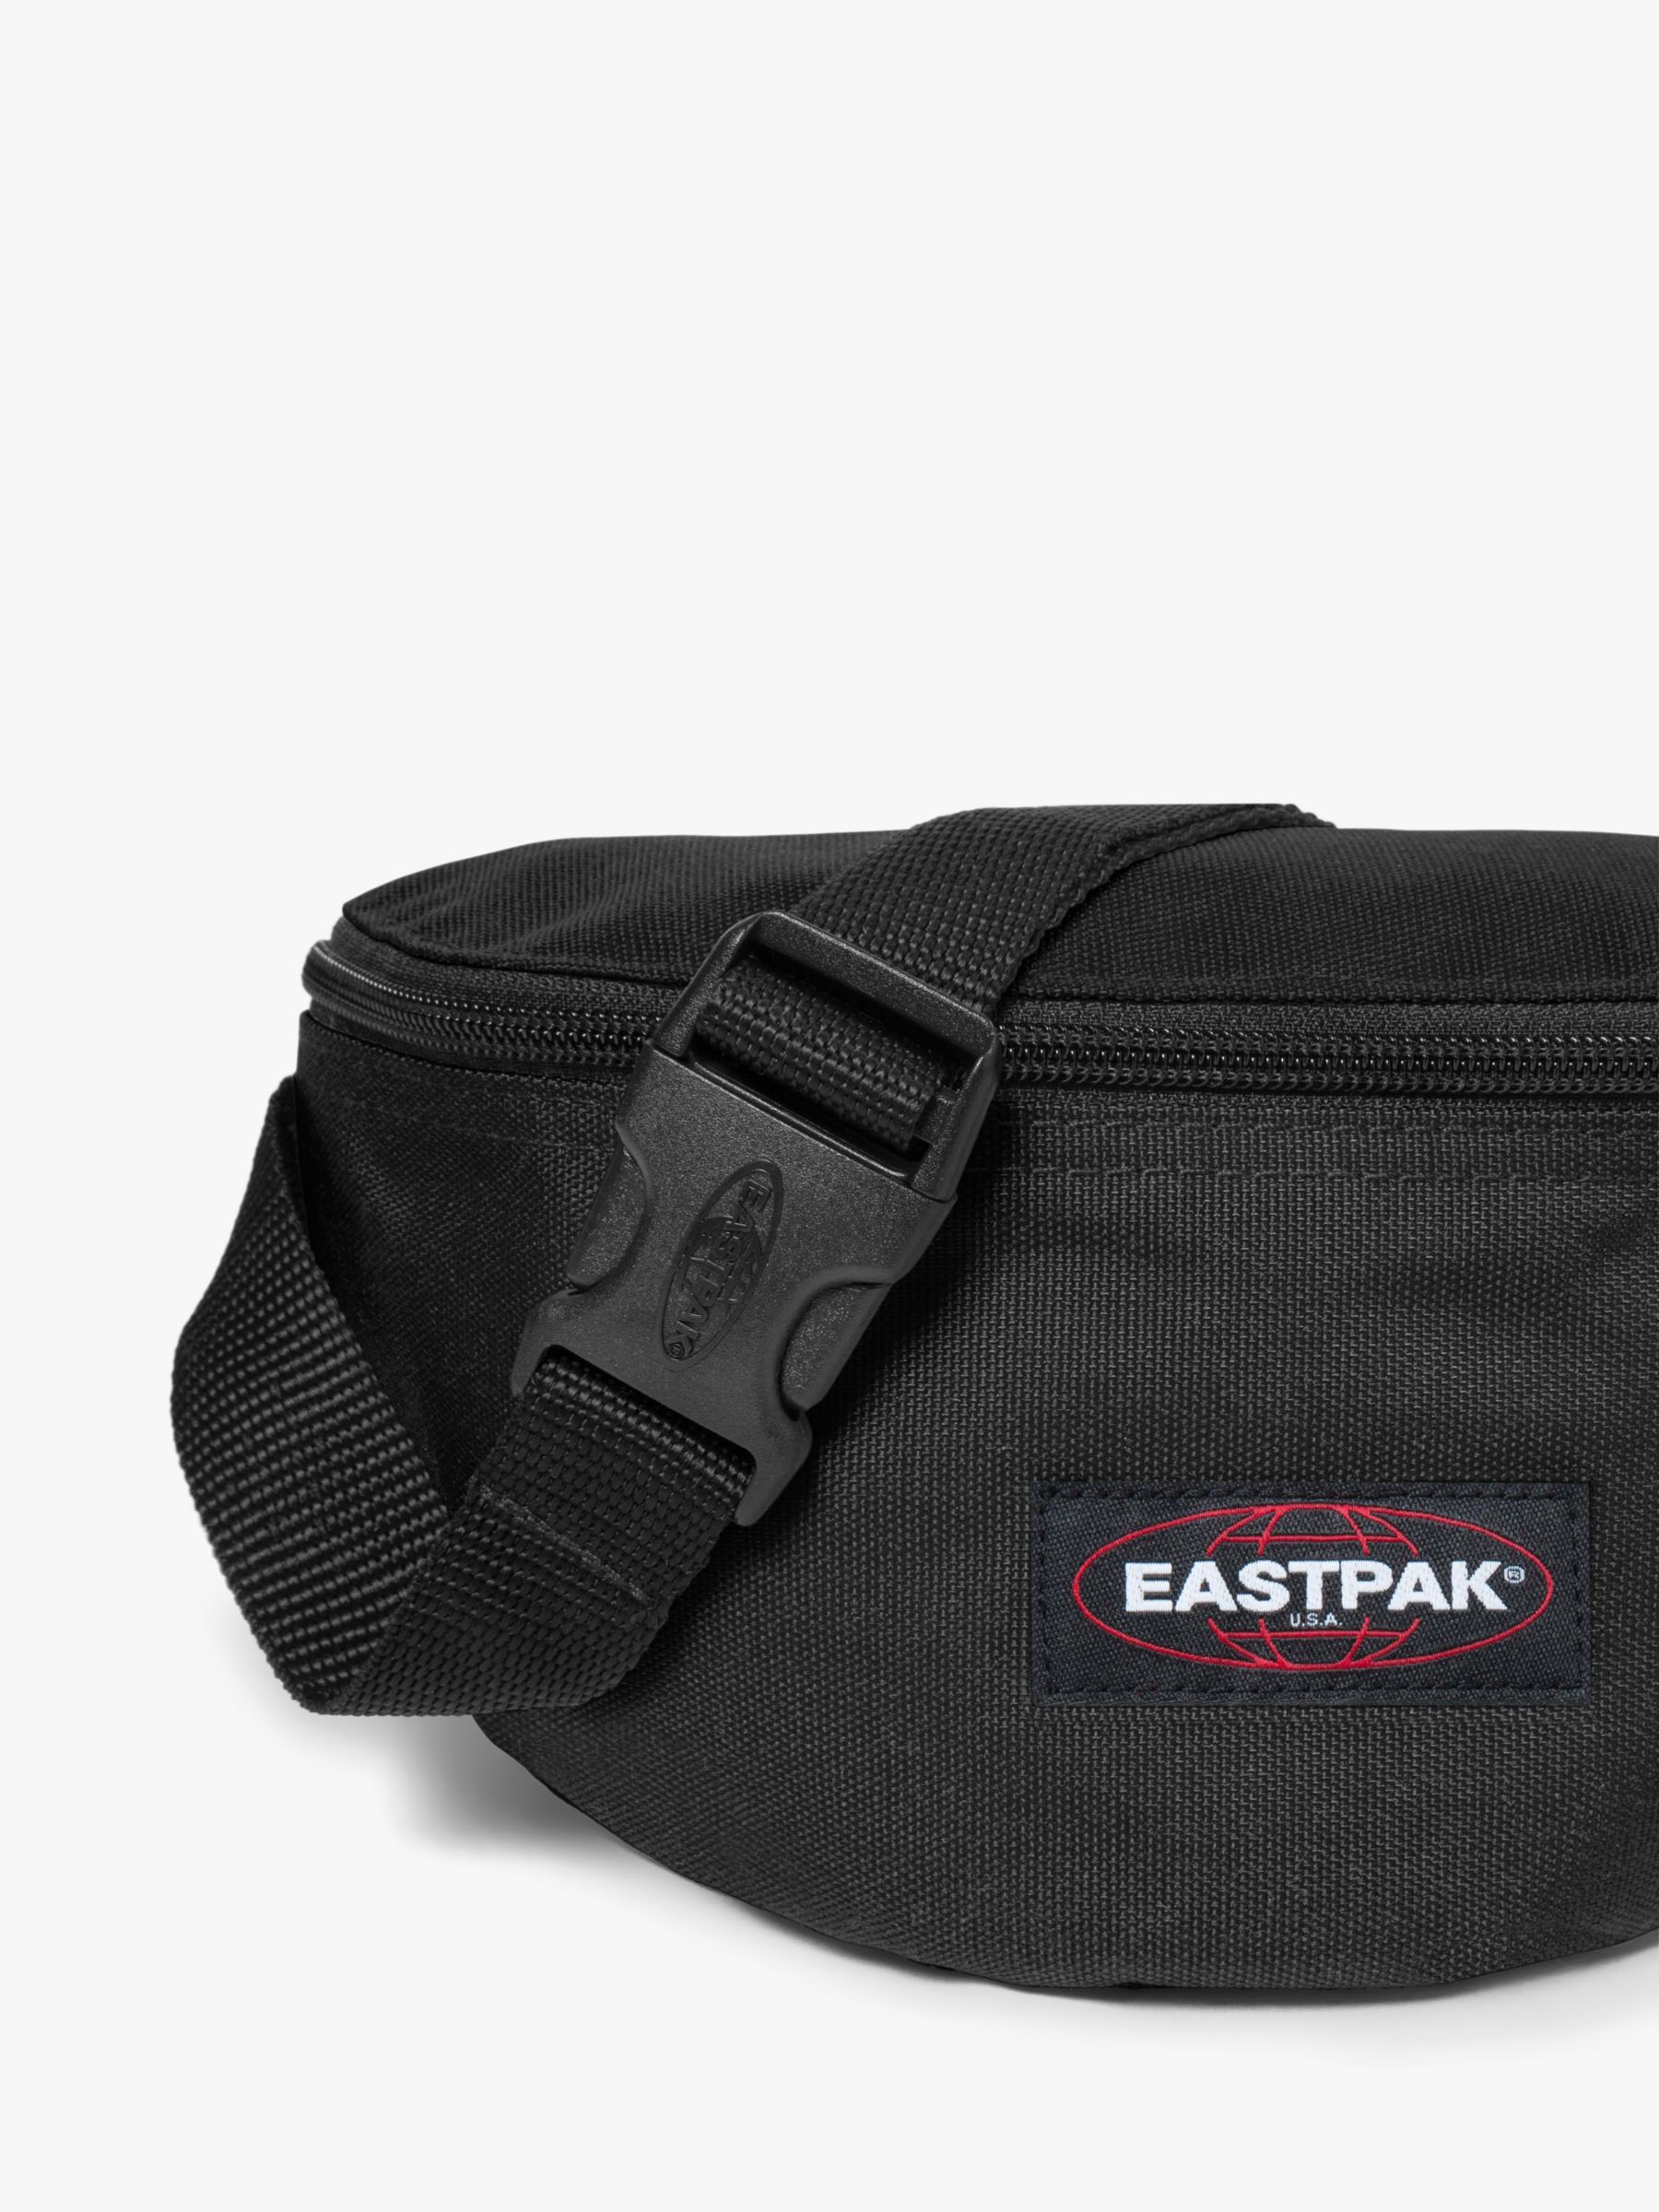 Buy Eastpak Springer Bum Bag Cut Grass Green